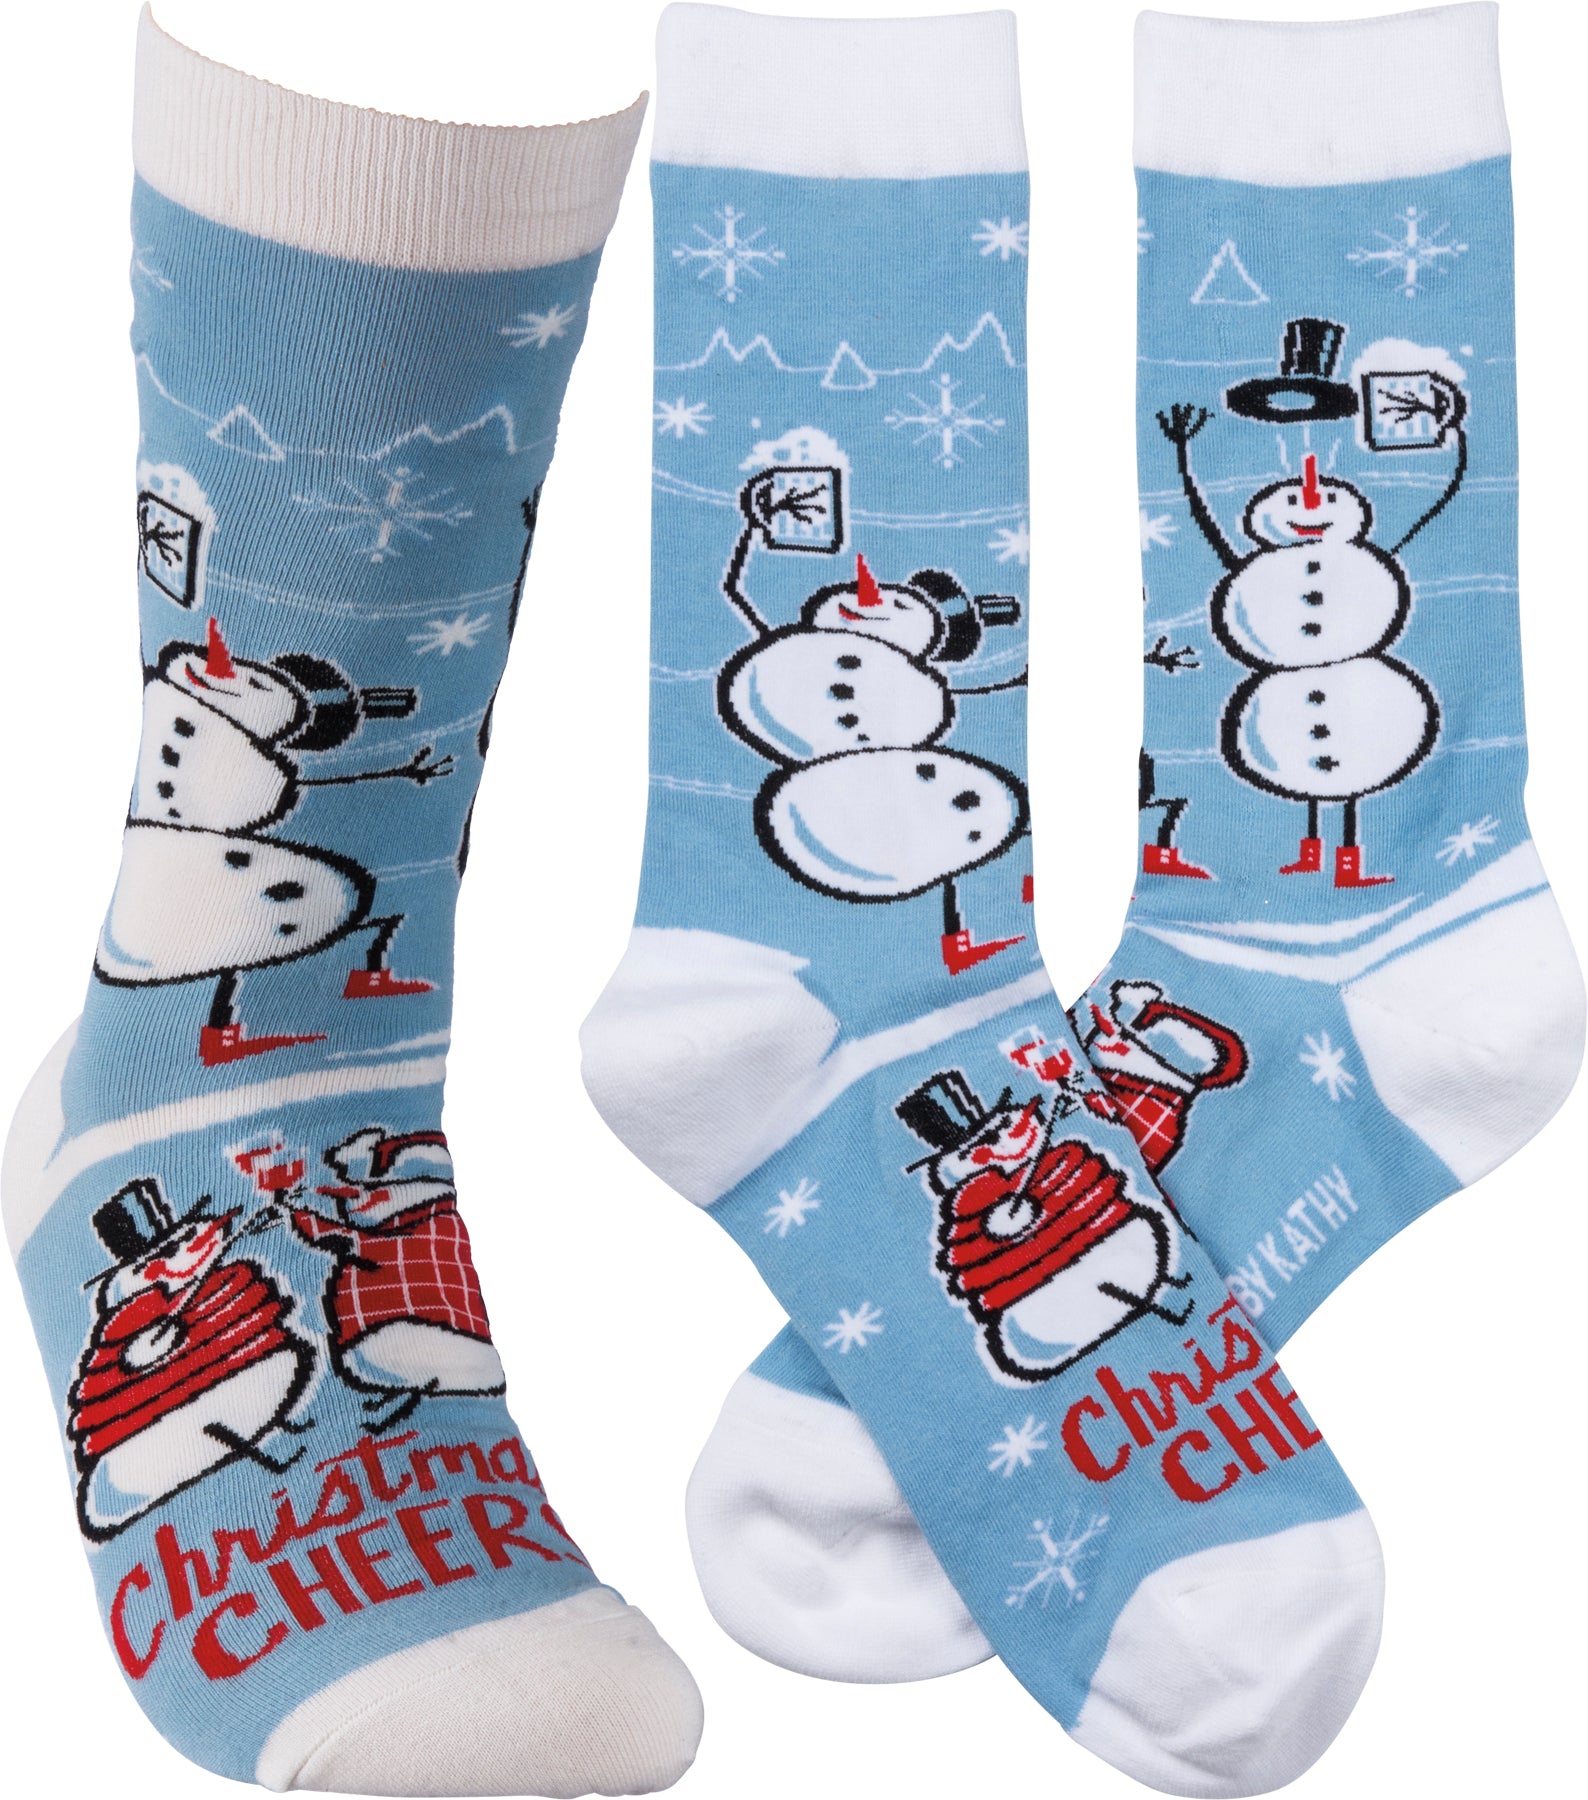 Socks-Christmas Cheer